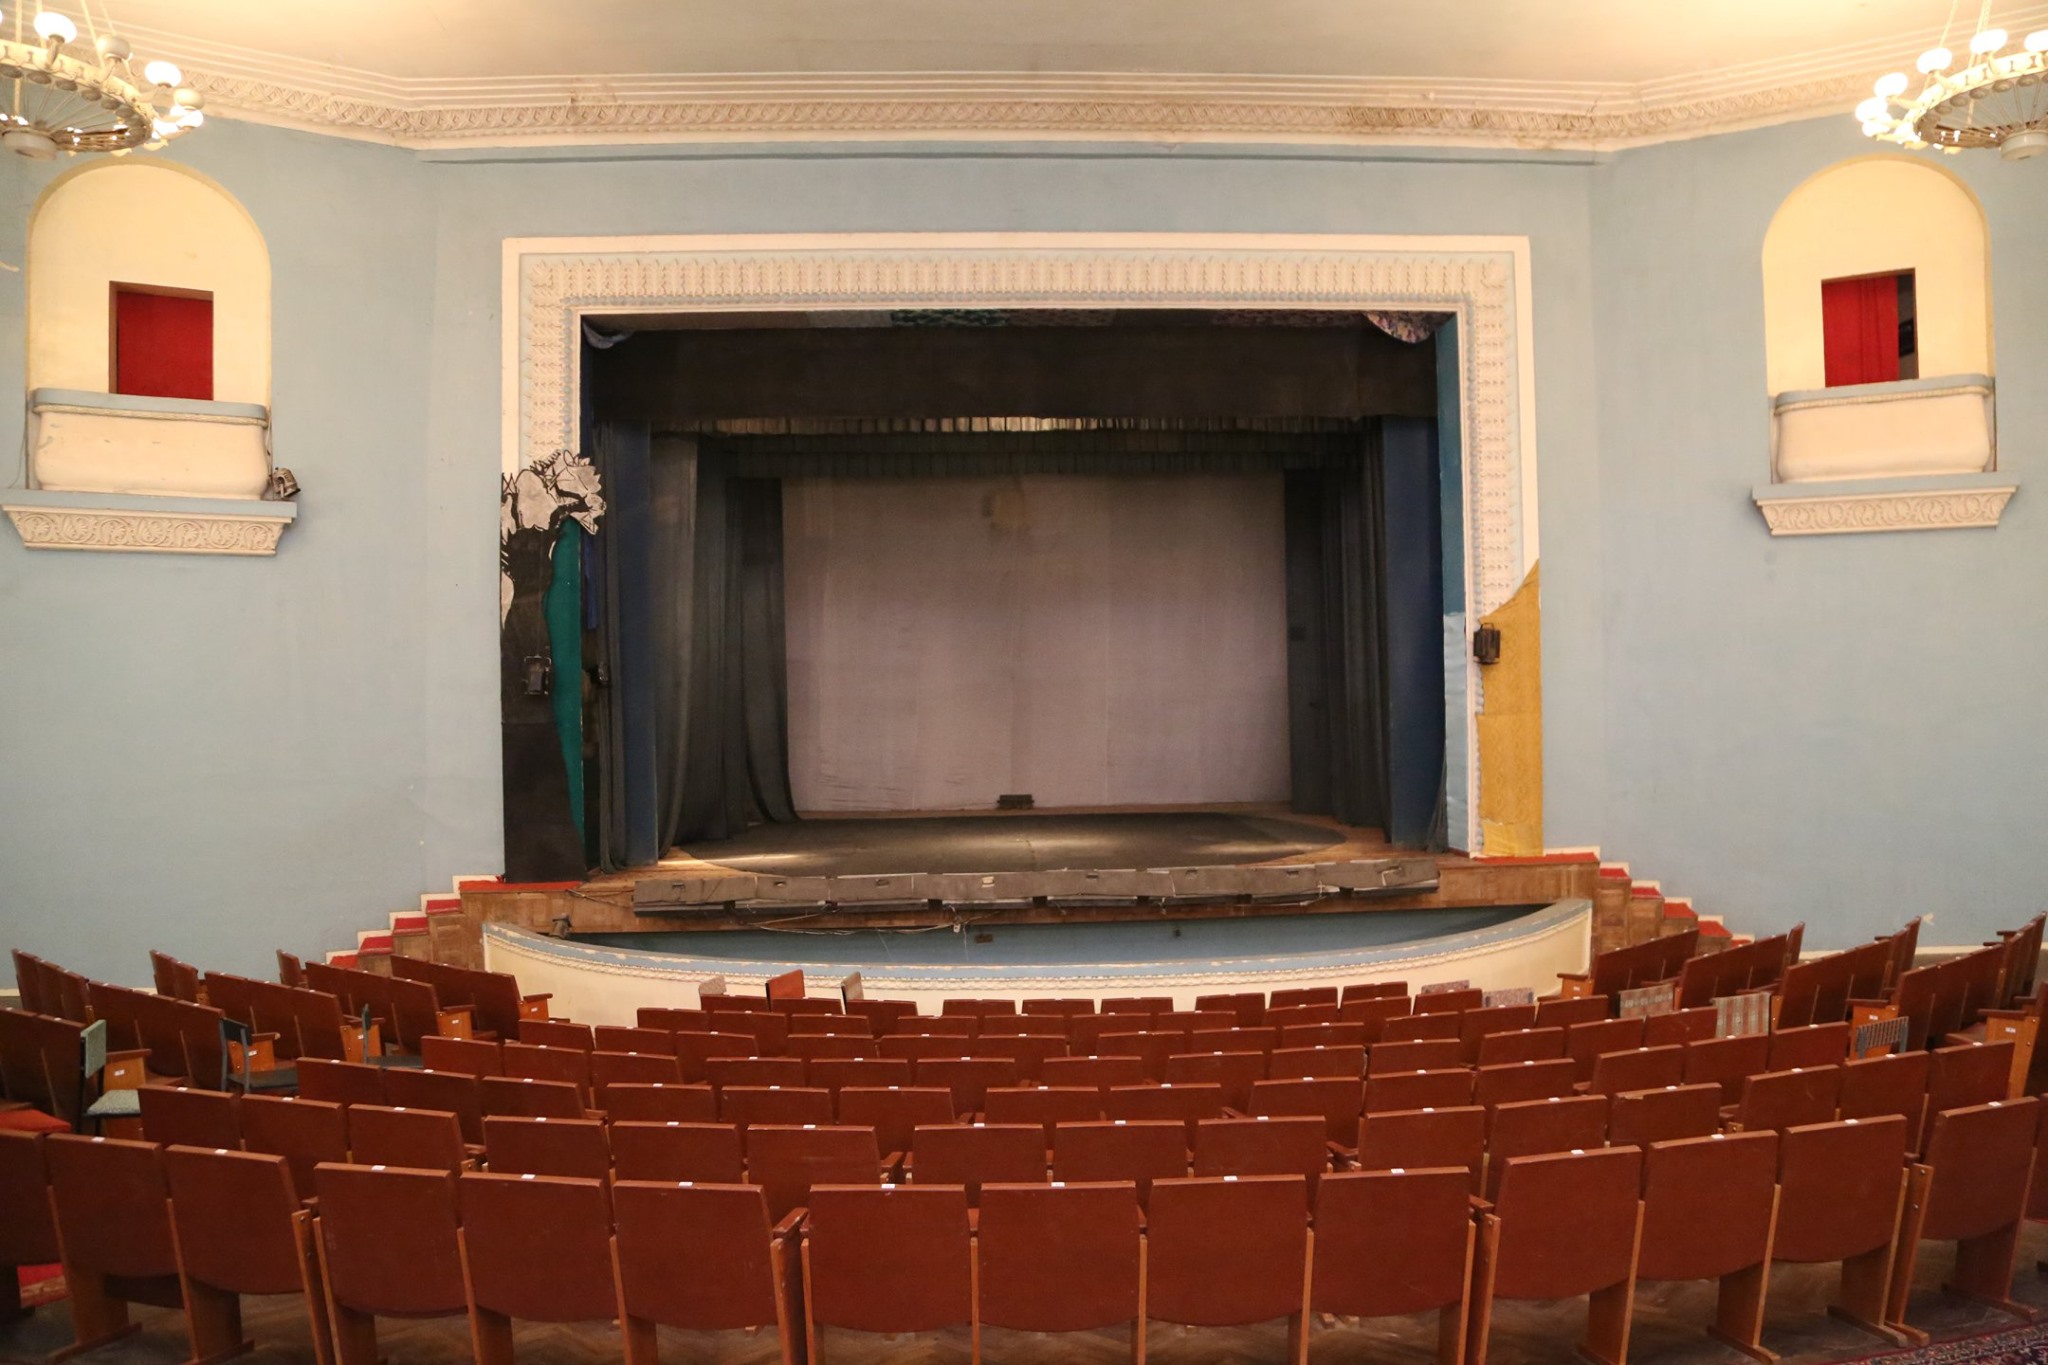 Բեմական հատվածը (լուսանկարը՝ Հրազդանի Դրամատիկական թատրոն-Մշակութային կենտրոն ֆեյսբուքյան էջից)